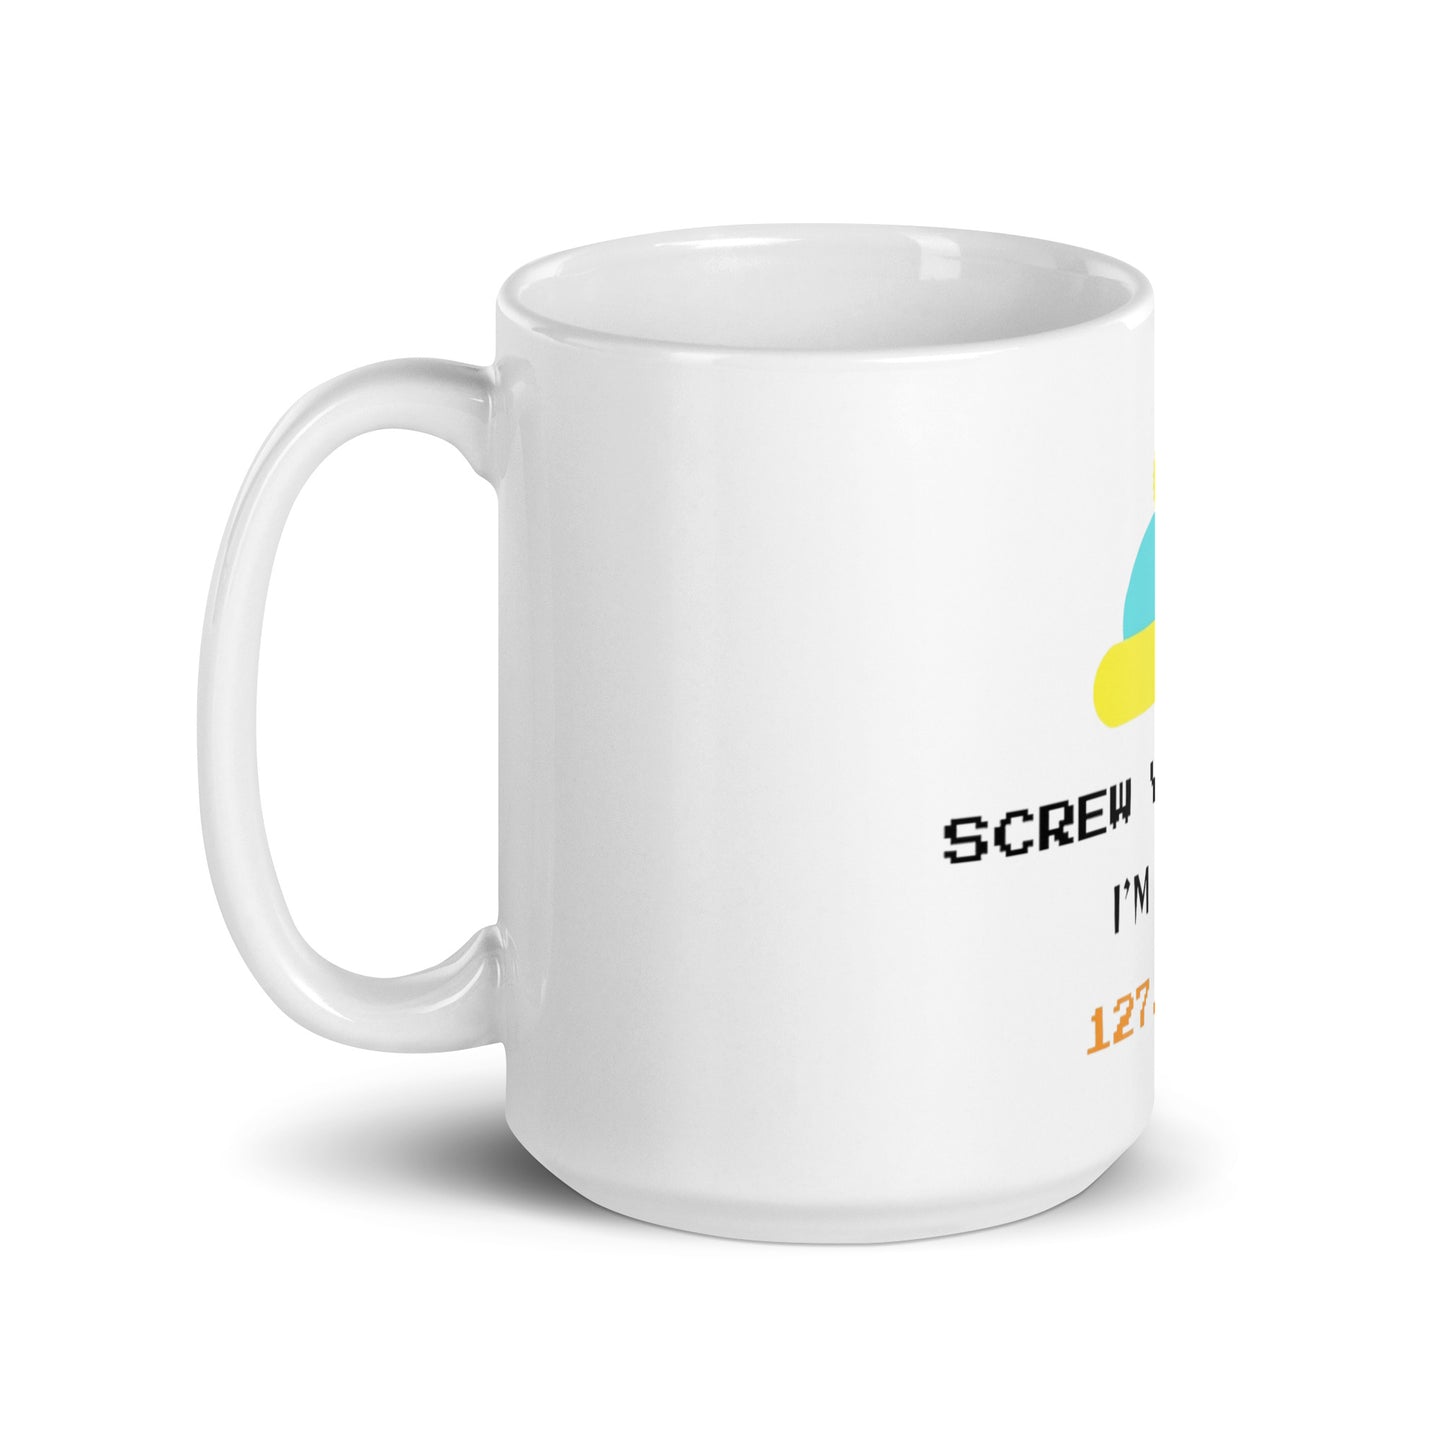 South Park glossy mug